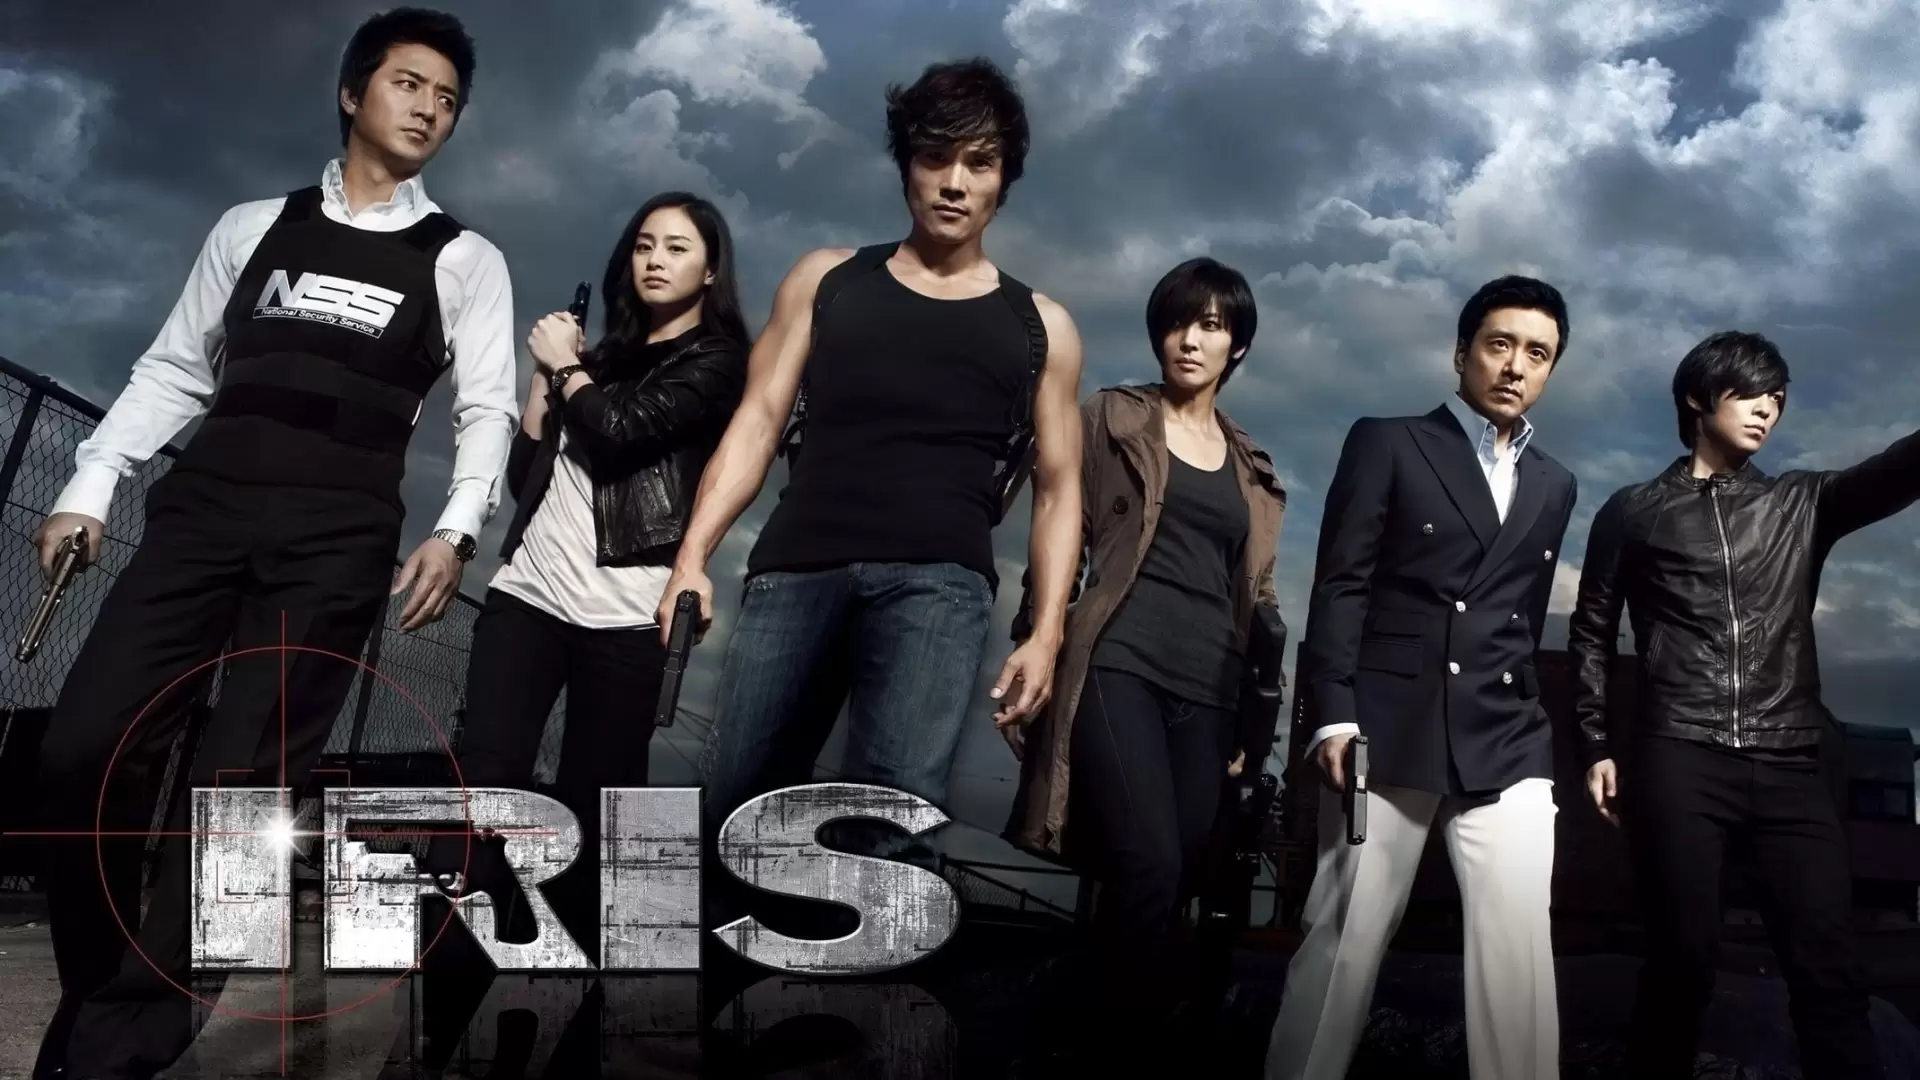 دانلود سریال Iris 2009 با زیرنویس فارسی